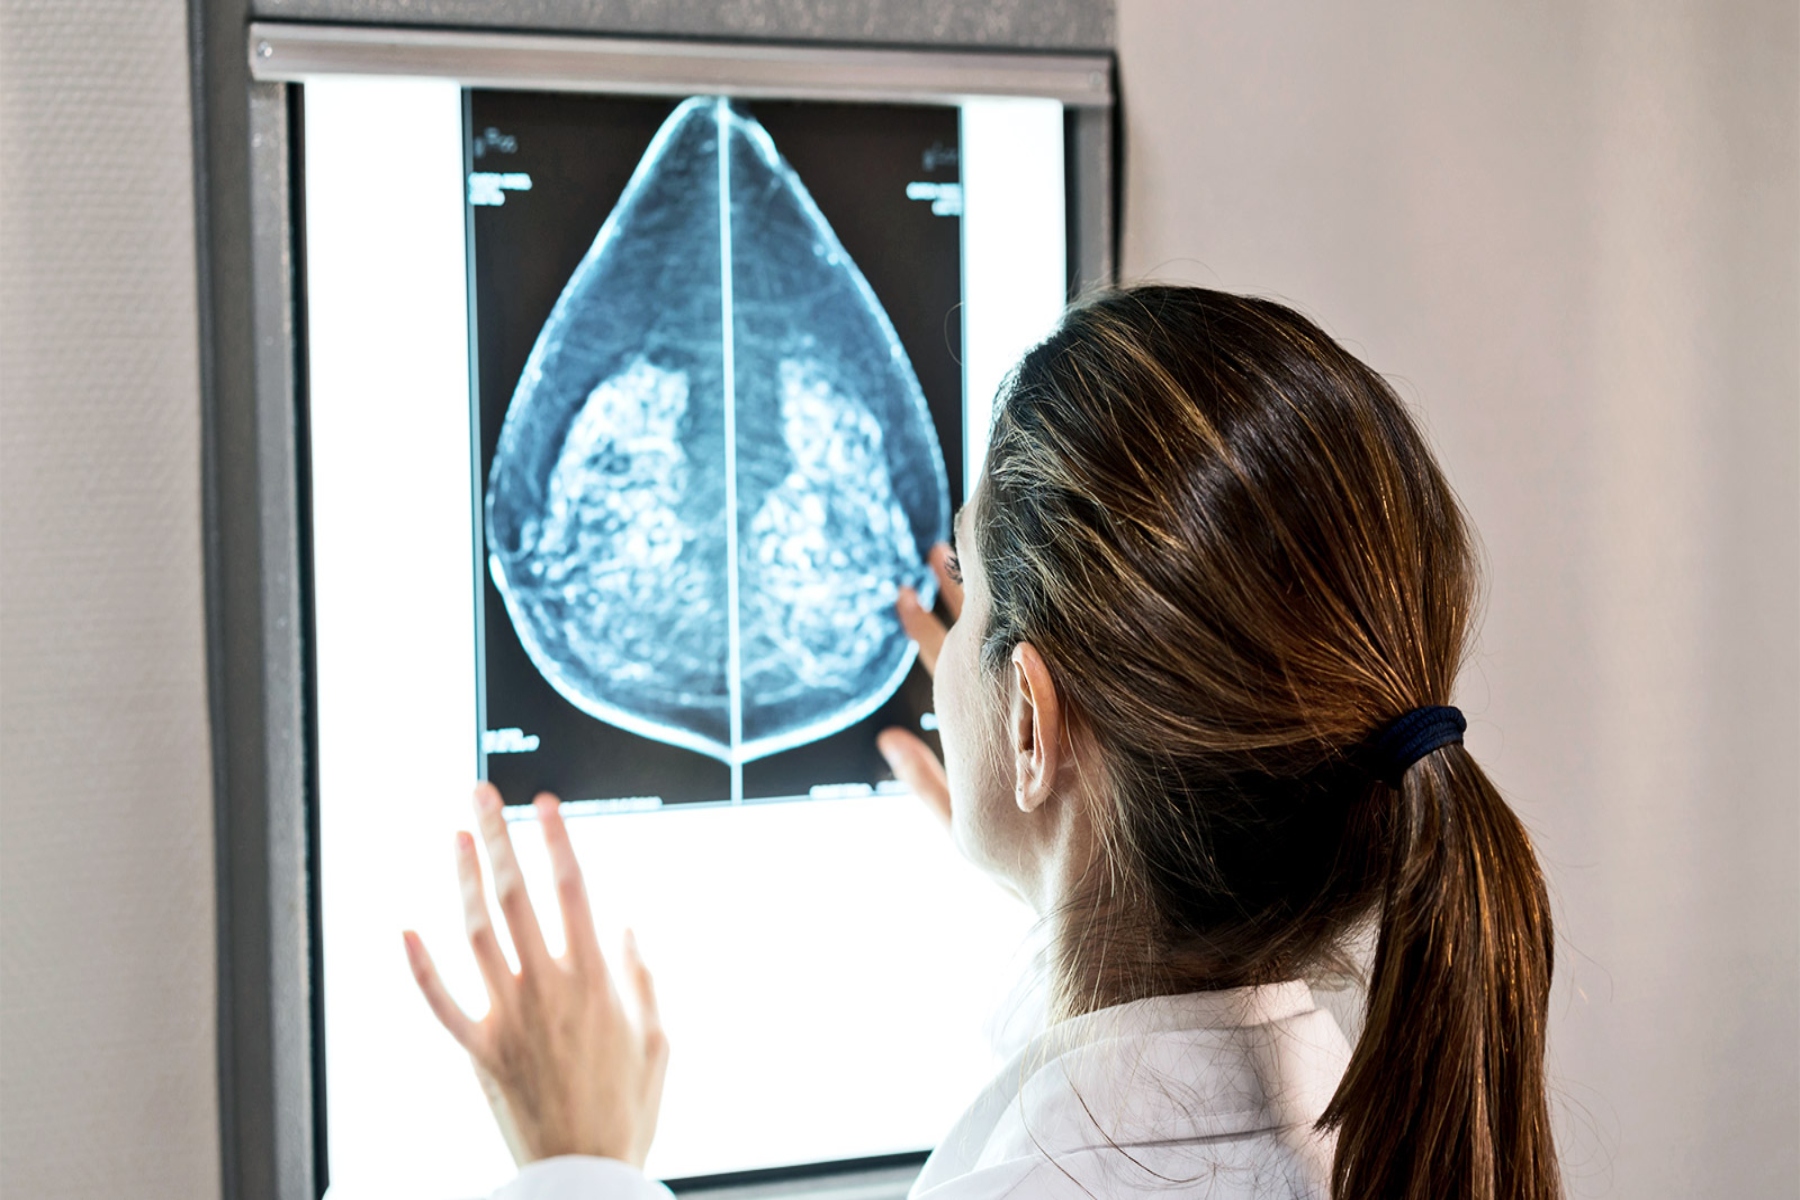 Μηχανική μάθηση υγεία: Το machine learning επιτρέπει την βέλτιστη ταξινόμηση του καρκίνου μαστού